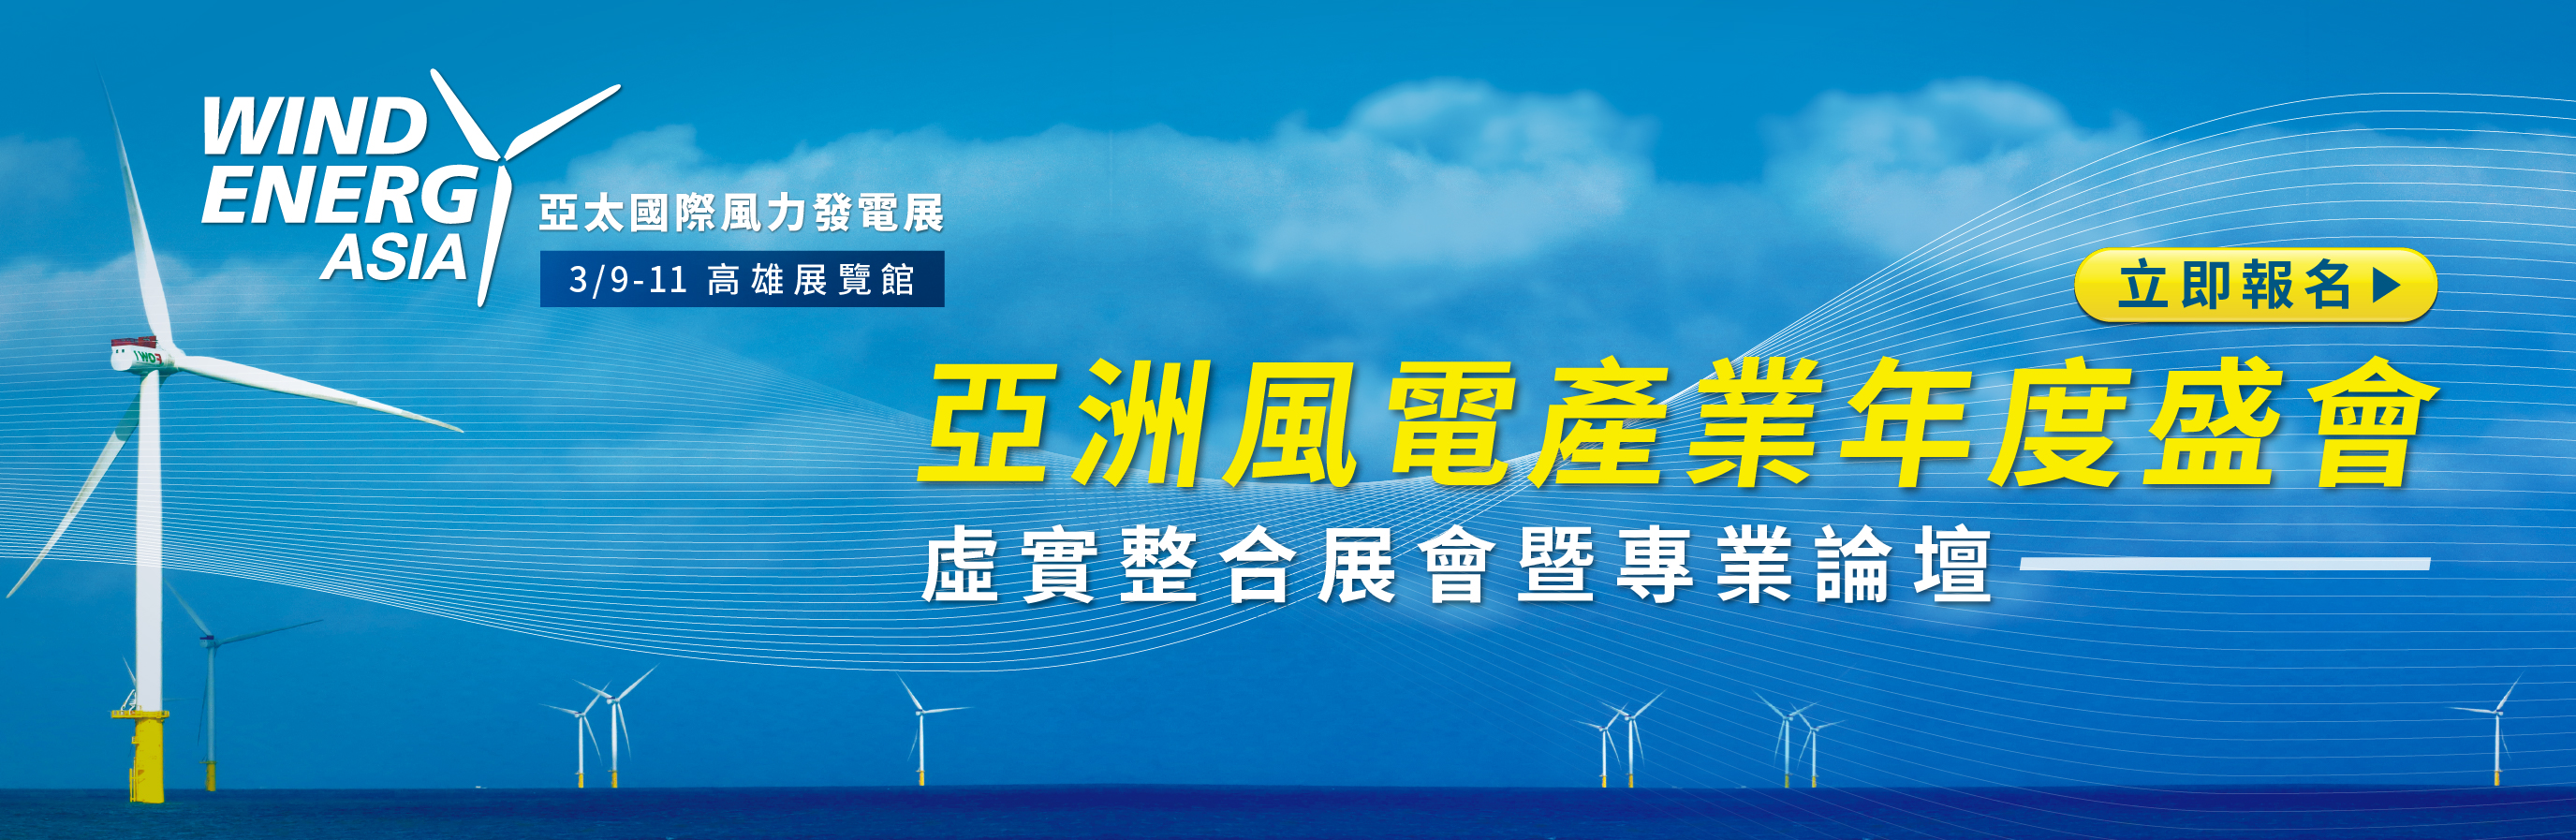 掌握亞洲最大離岸風電市場商機 亞太國際風力發電展